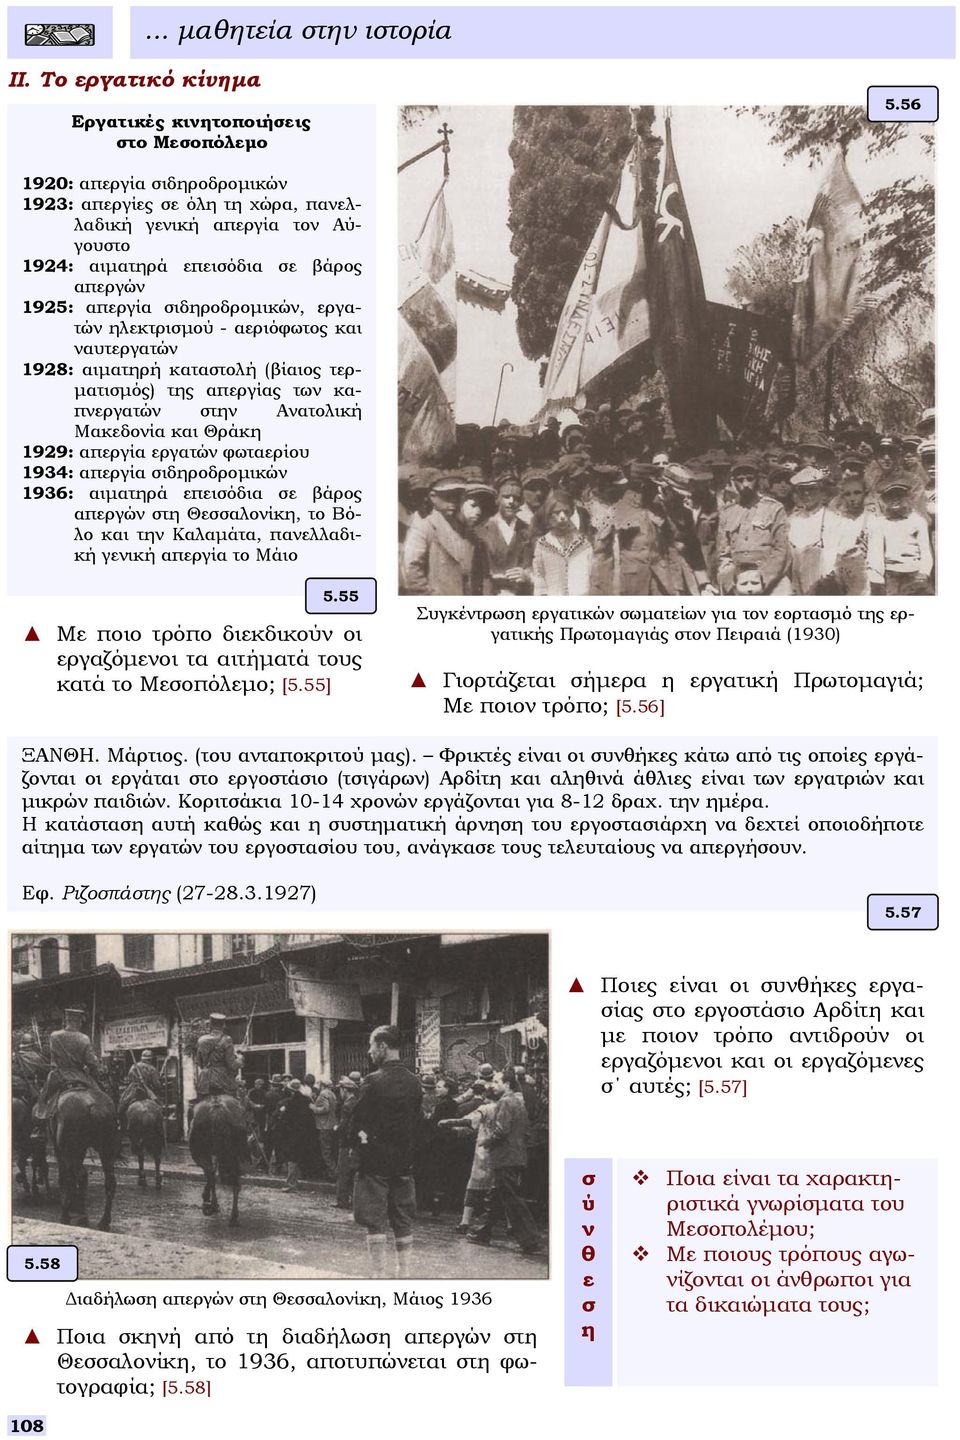 αεριόφωτος και ναυτεργατών 1928: αιµατηρή κατατολή (βίαιος τερ- µατιµός) της απεργίας των καπνεργατών την Ανατολική Μακεδονία και Θράκη 1929: απεργία εργατών φωταερίου 1934: απεργία ιδηροδροµικών